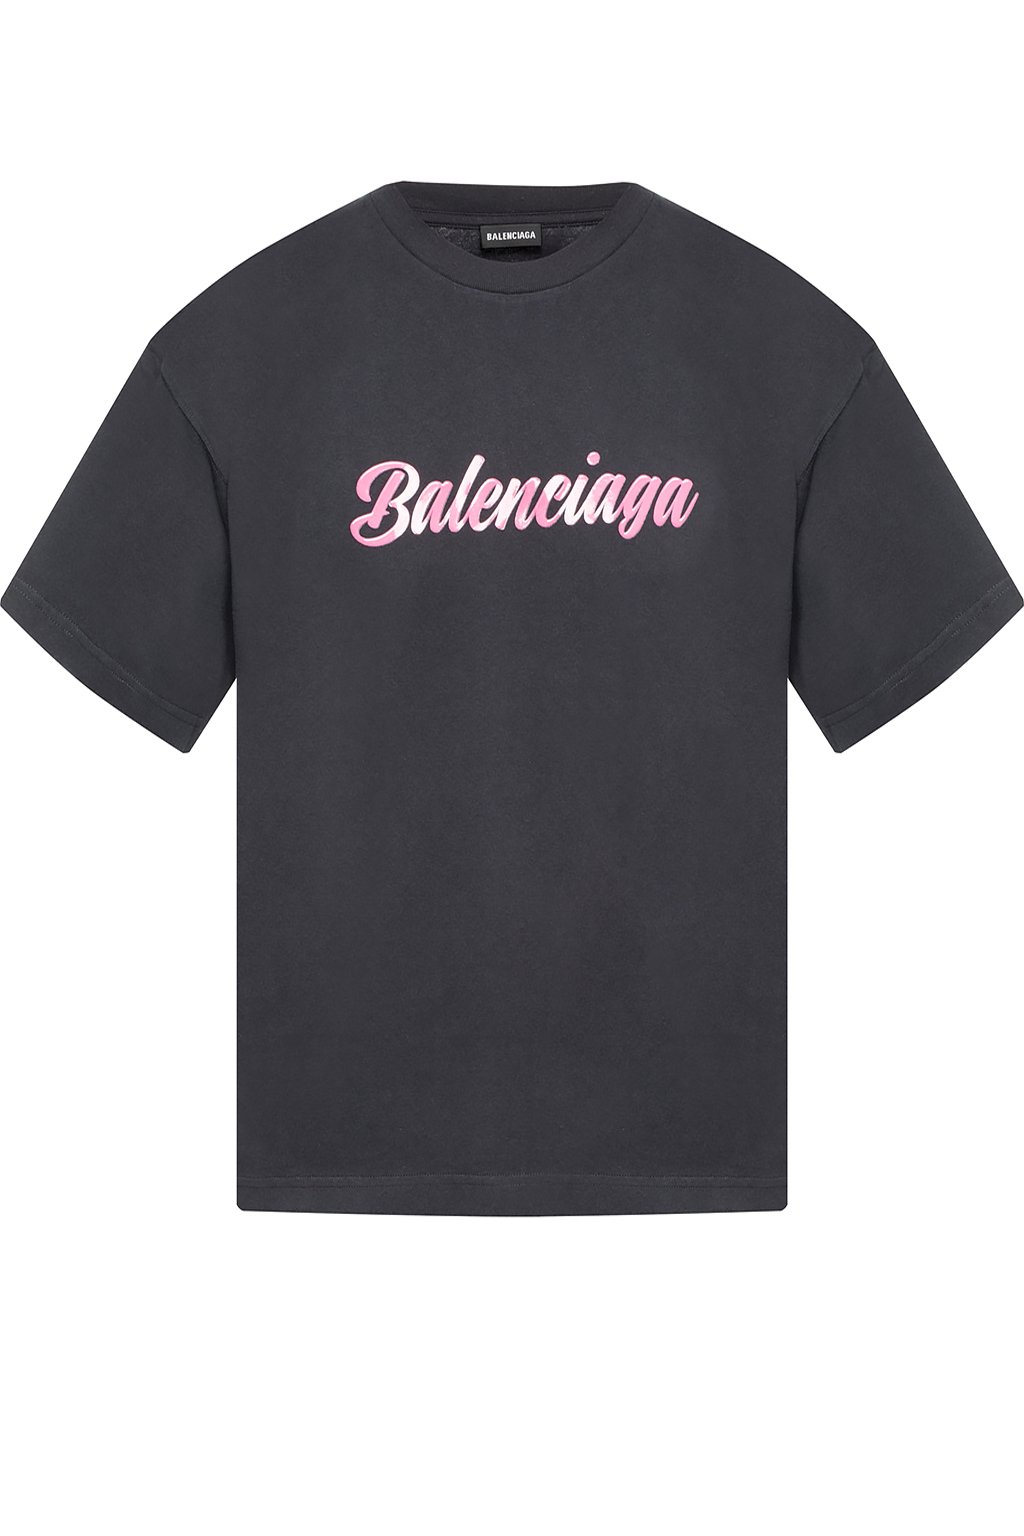 Balenciaga Pink Cotton Logo T-Shirt L Balenciaga